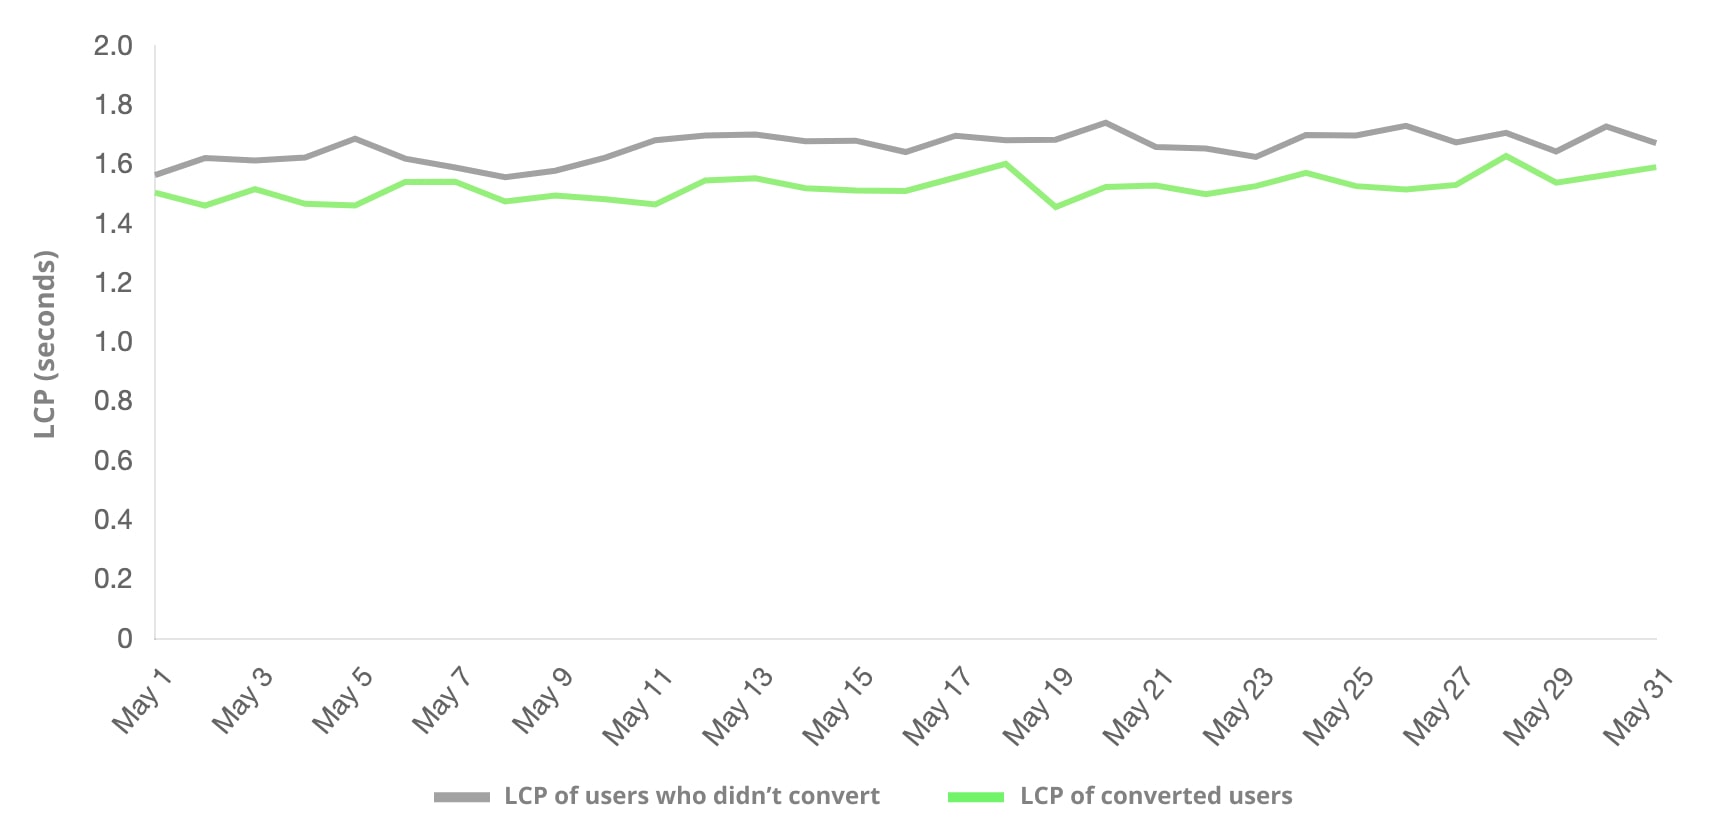 完成轉換的使用者與未採用 LCP 的使用者比較。轉換頻率較高的使用者群組會遇到較低的 LCP。